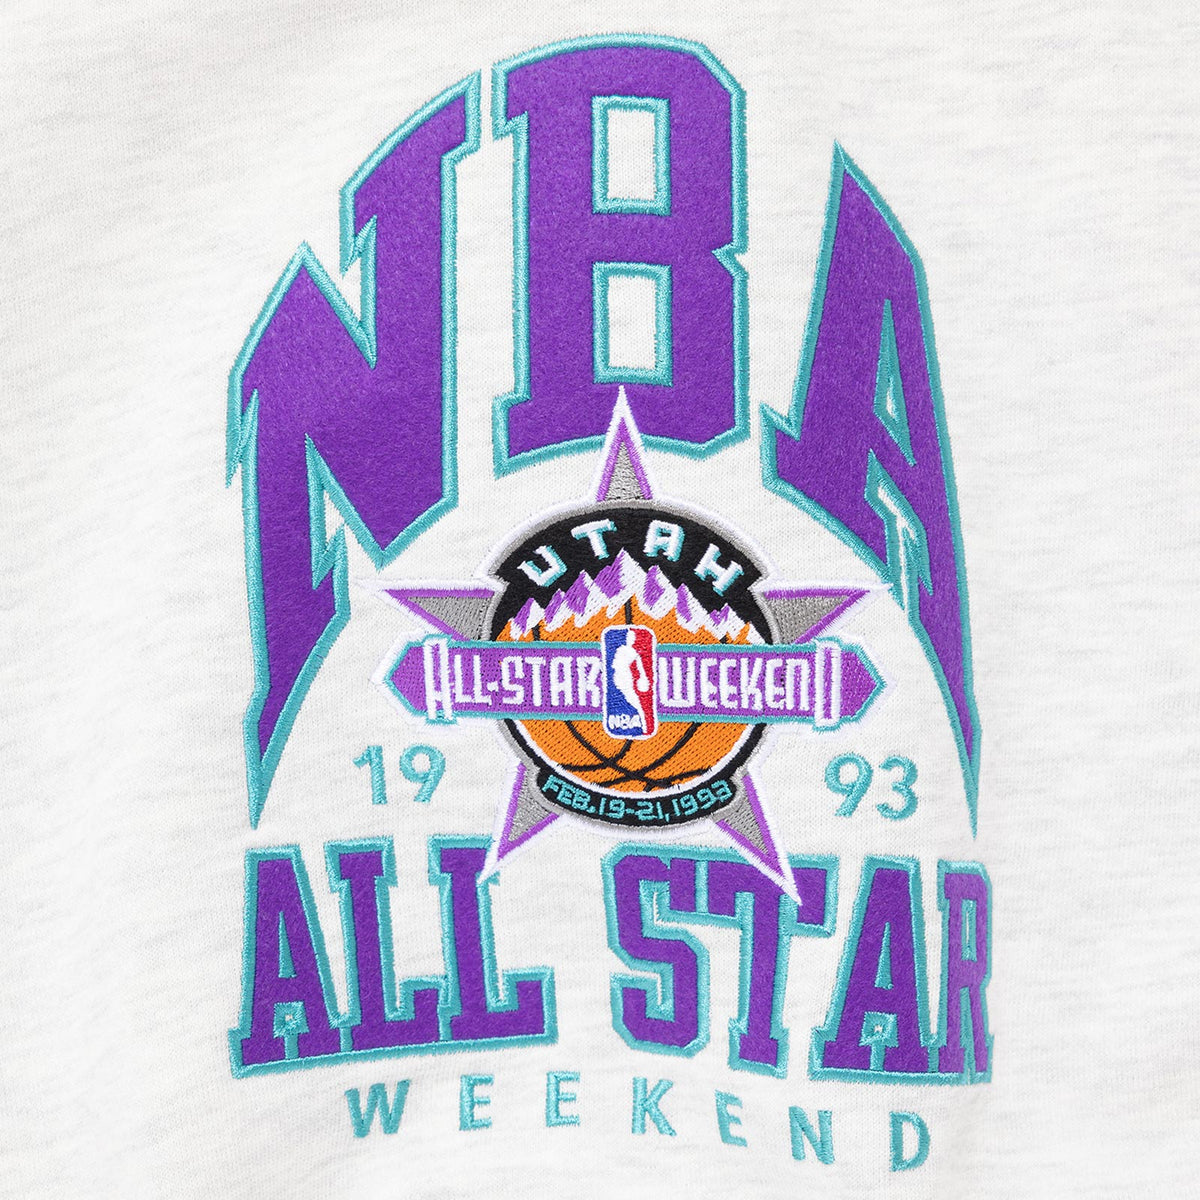 Utah 1993 NBA All Star Weekend Crew Sweatshirt - White Marle